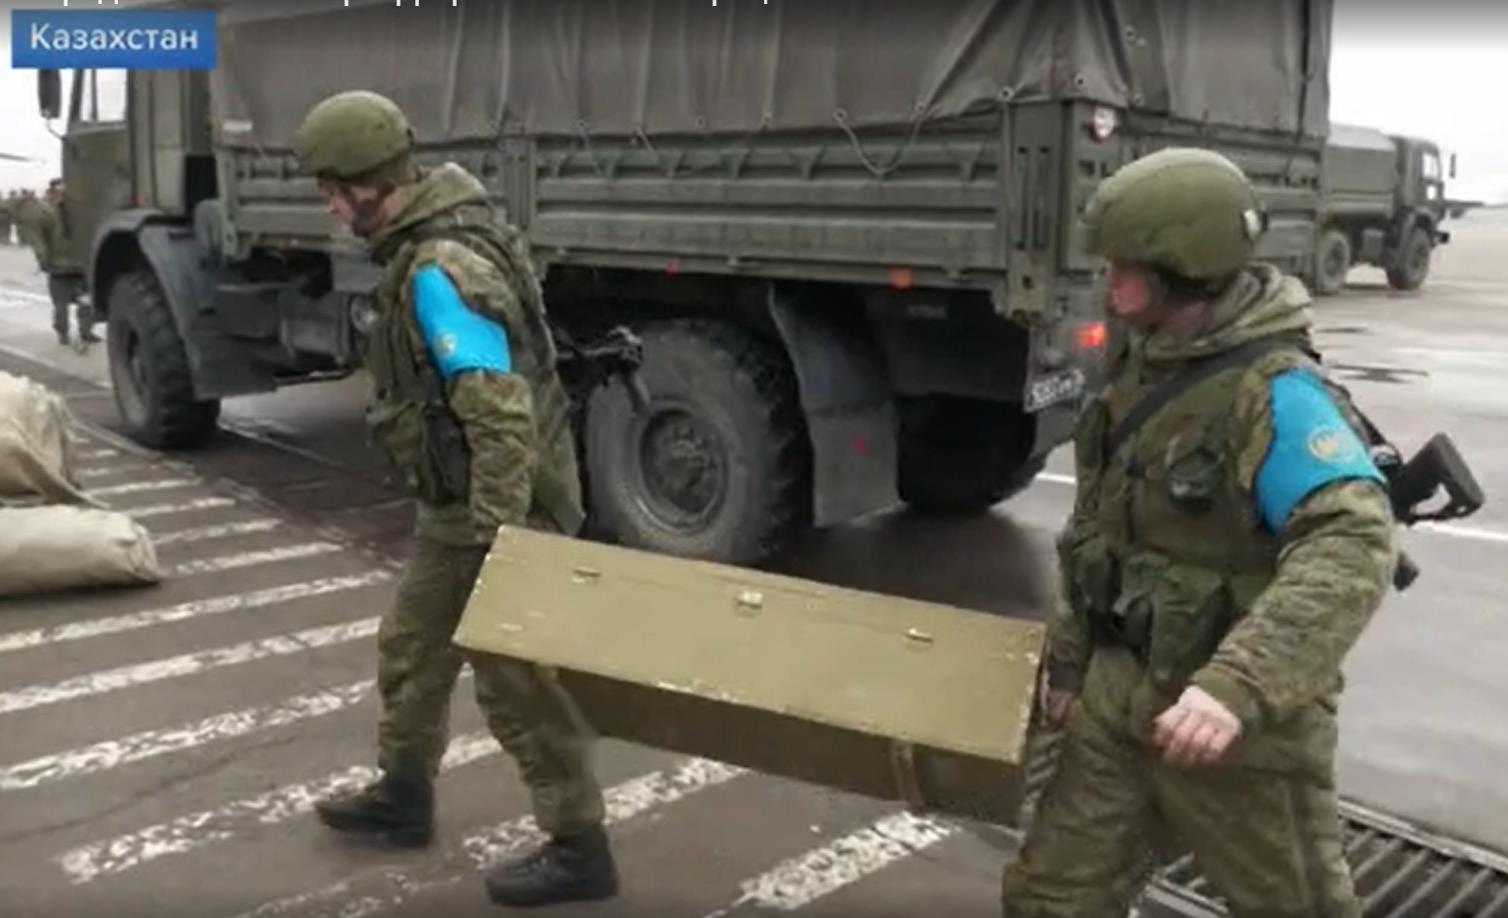 Ульяновские десантники встали на охрану аэропорта в Алматы